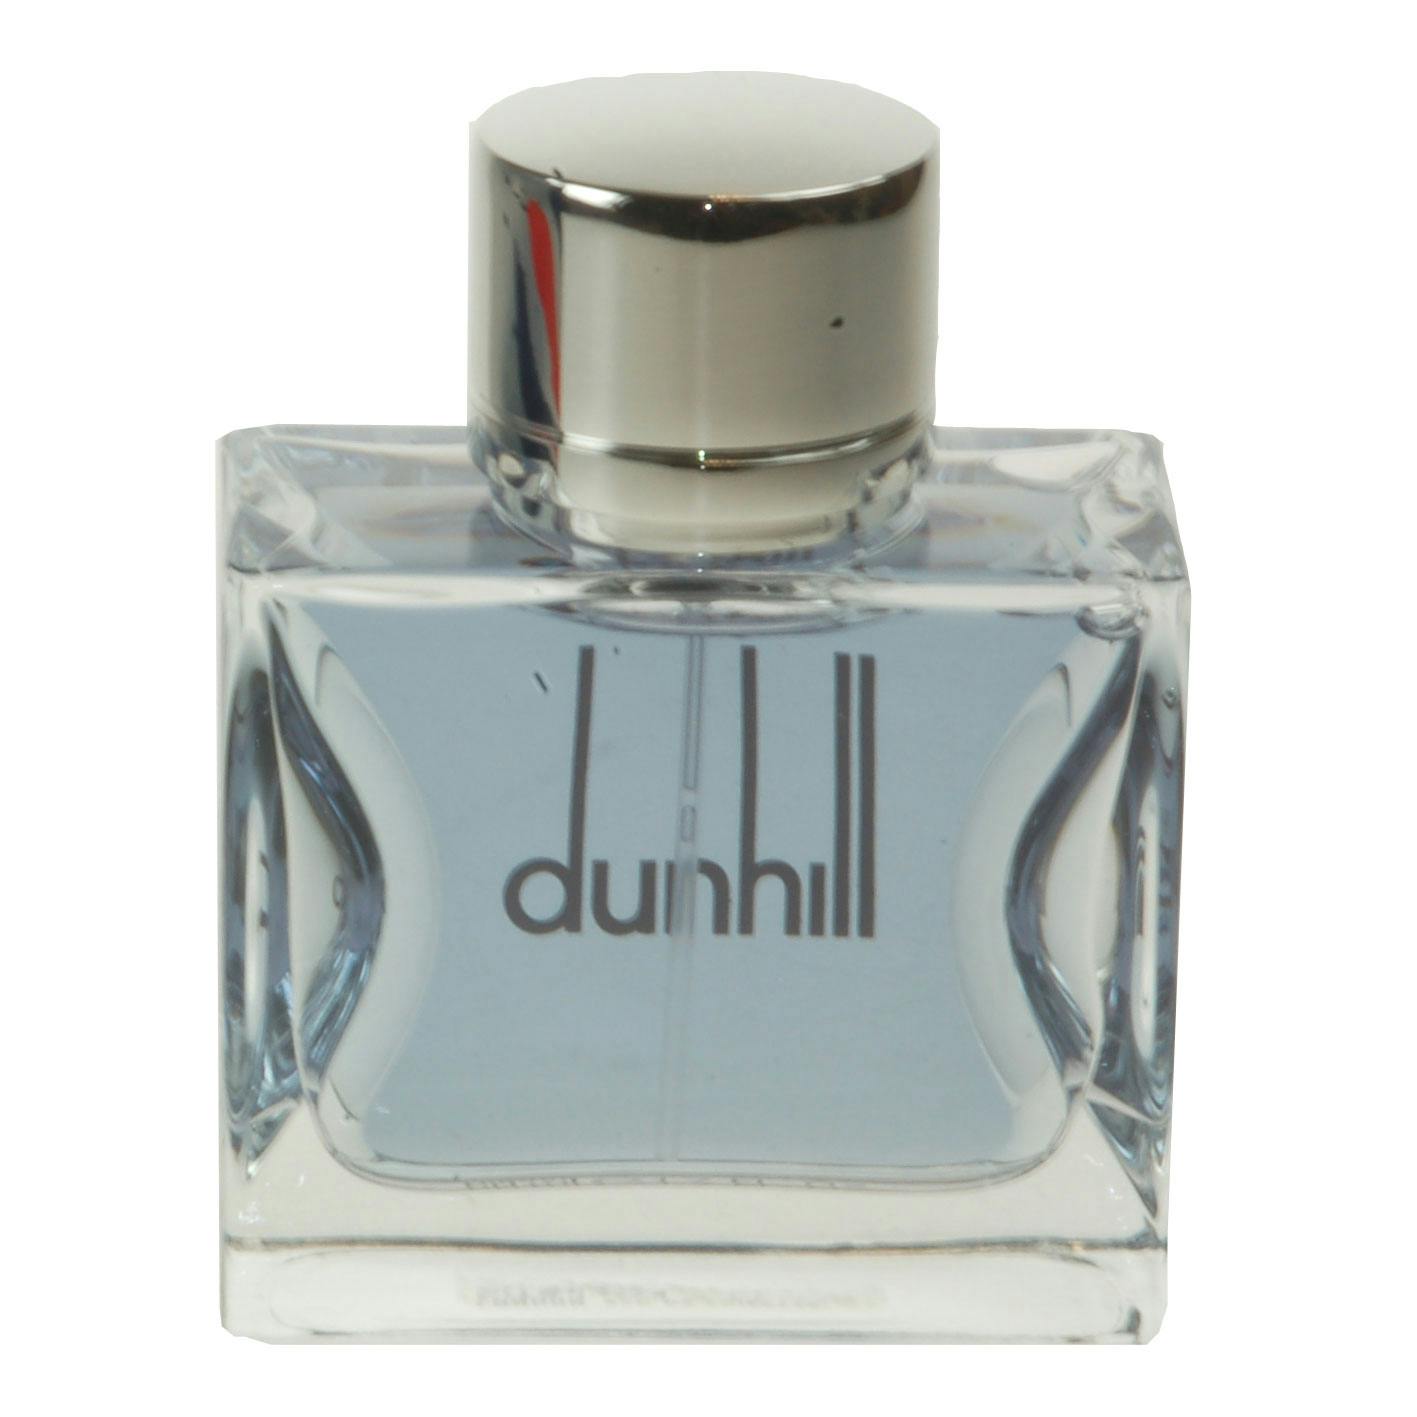 dunhill evoque platinum